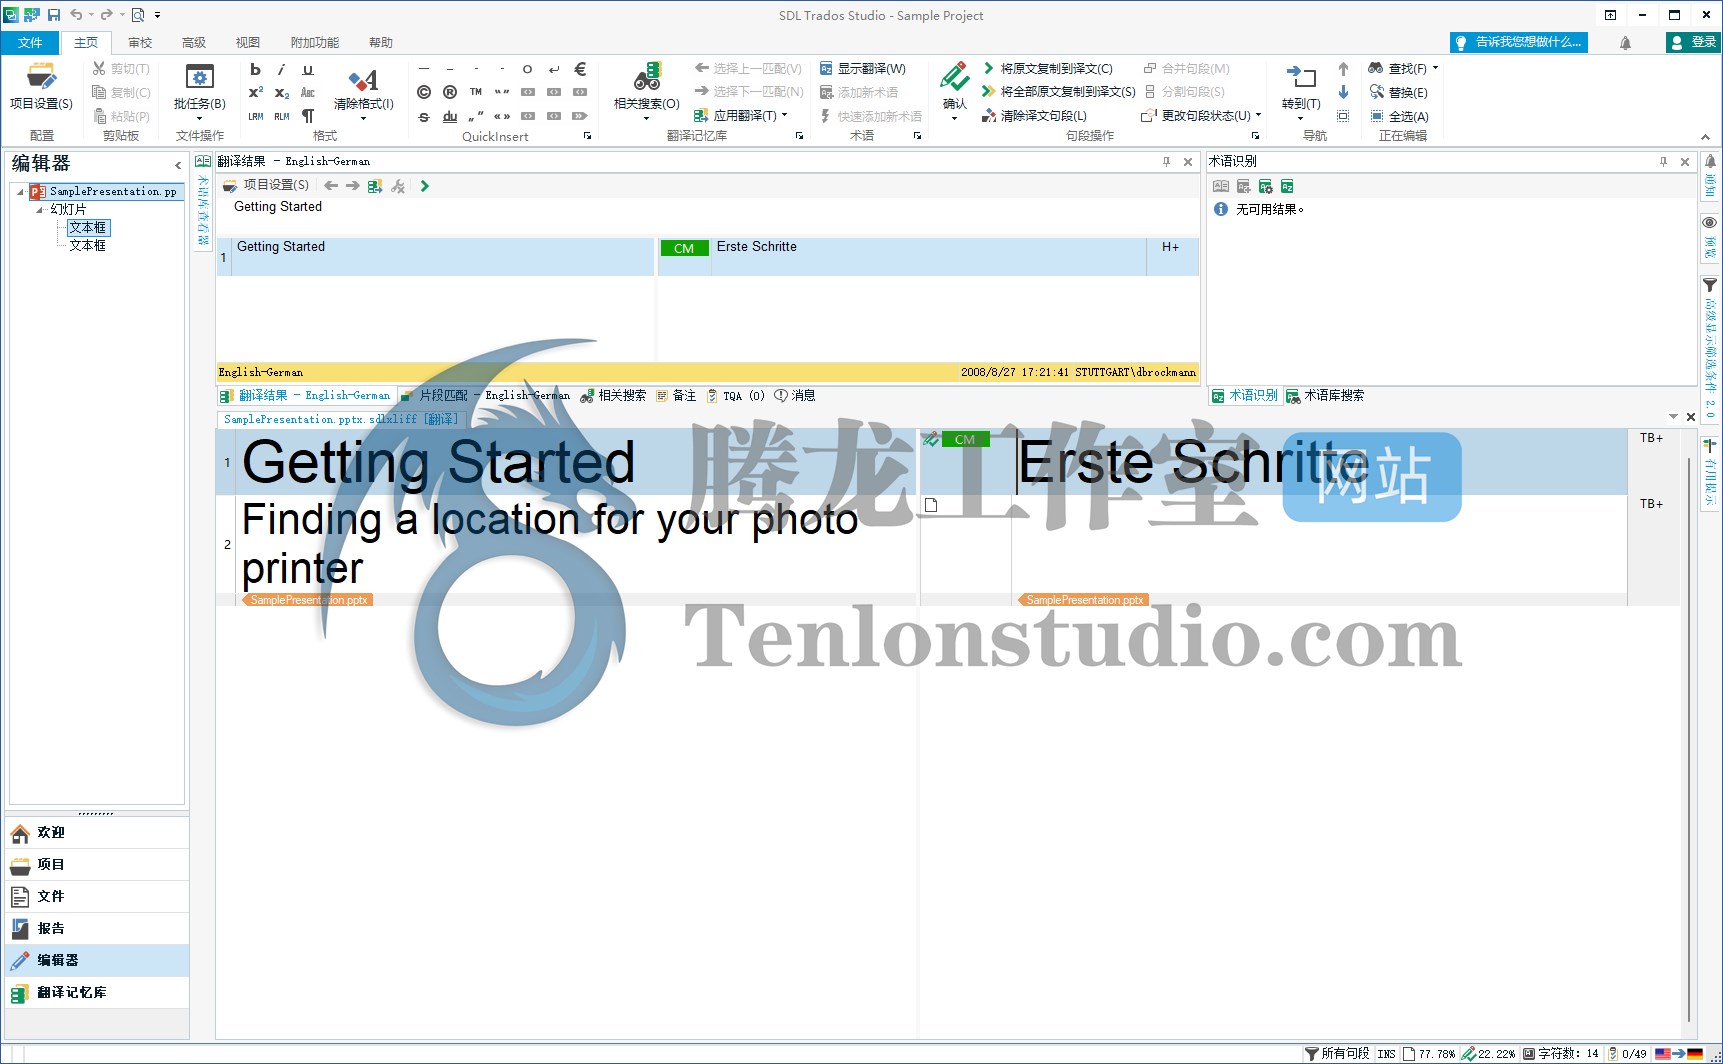 计算机辅助翻译软件 SDL Trados Studio Professional 2021 SR2 v16.2.9.9198 破解版插图